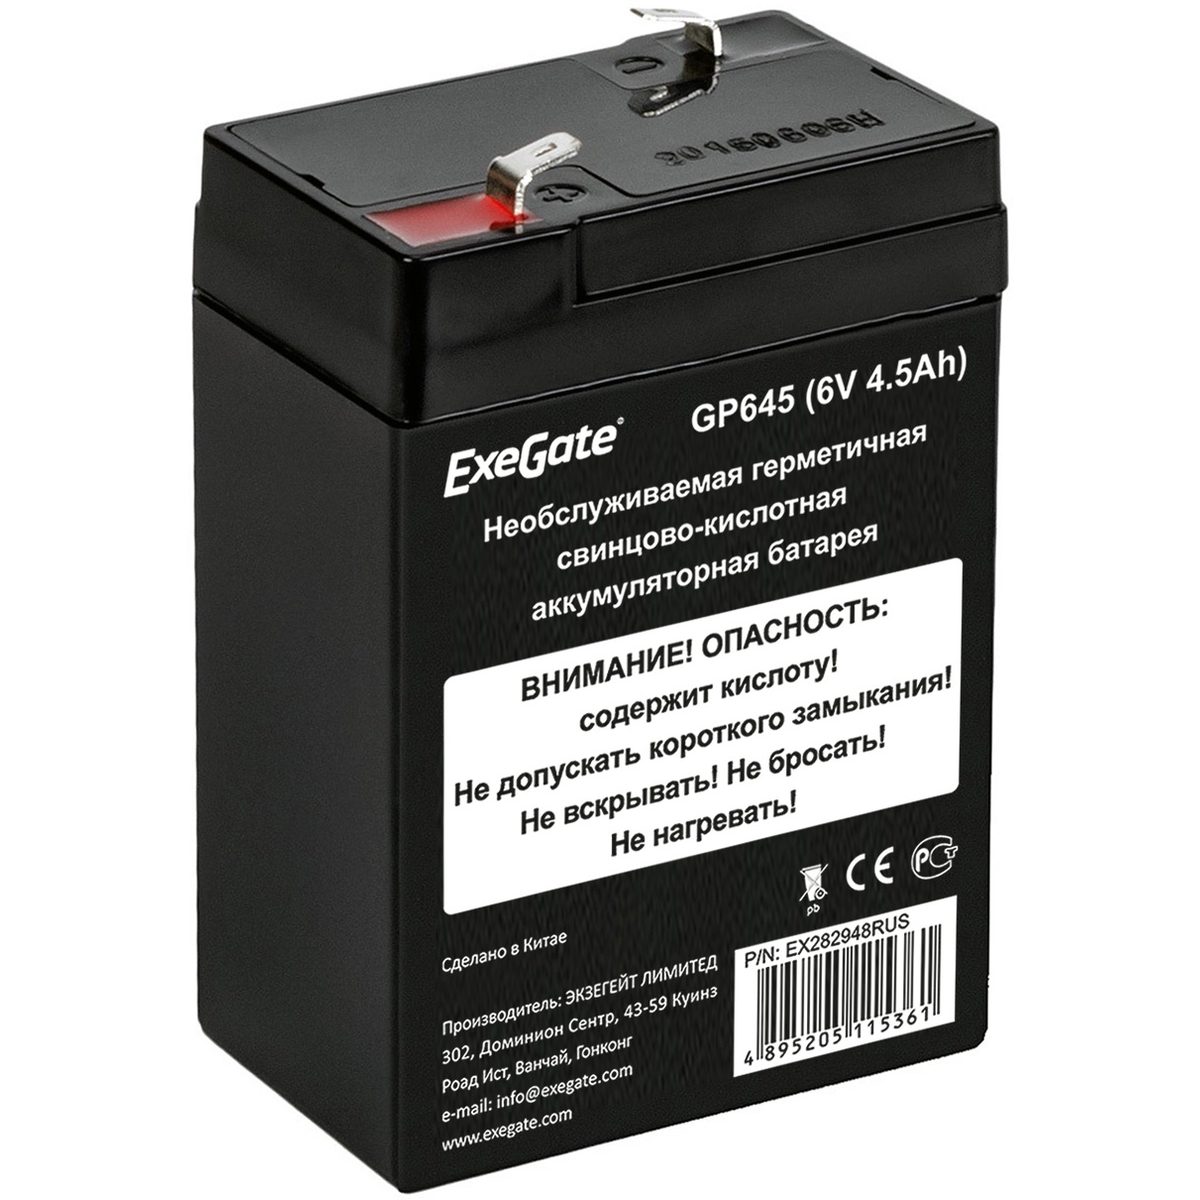 

Аккумуляторная батарея для ОПС Exegate GP645, 6V, 4.5Ah (EX282948RUS), GP645